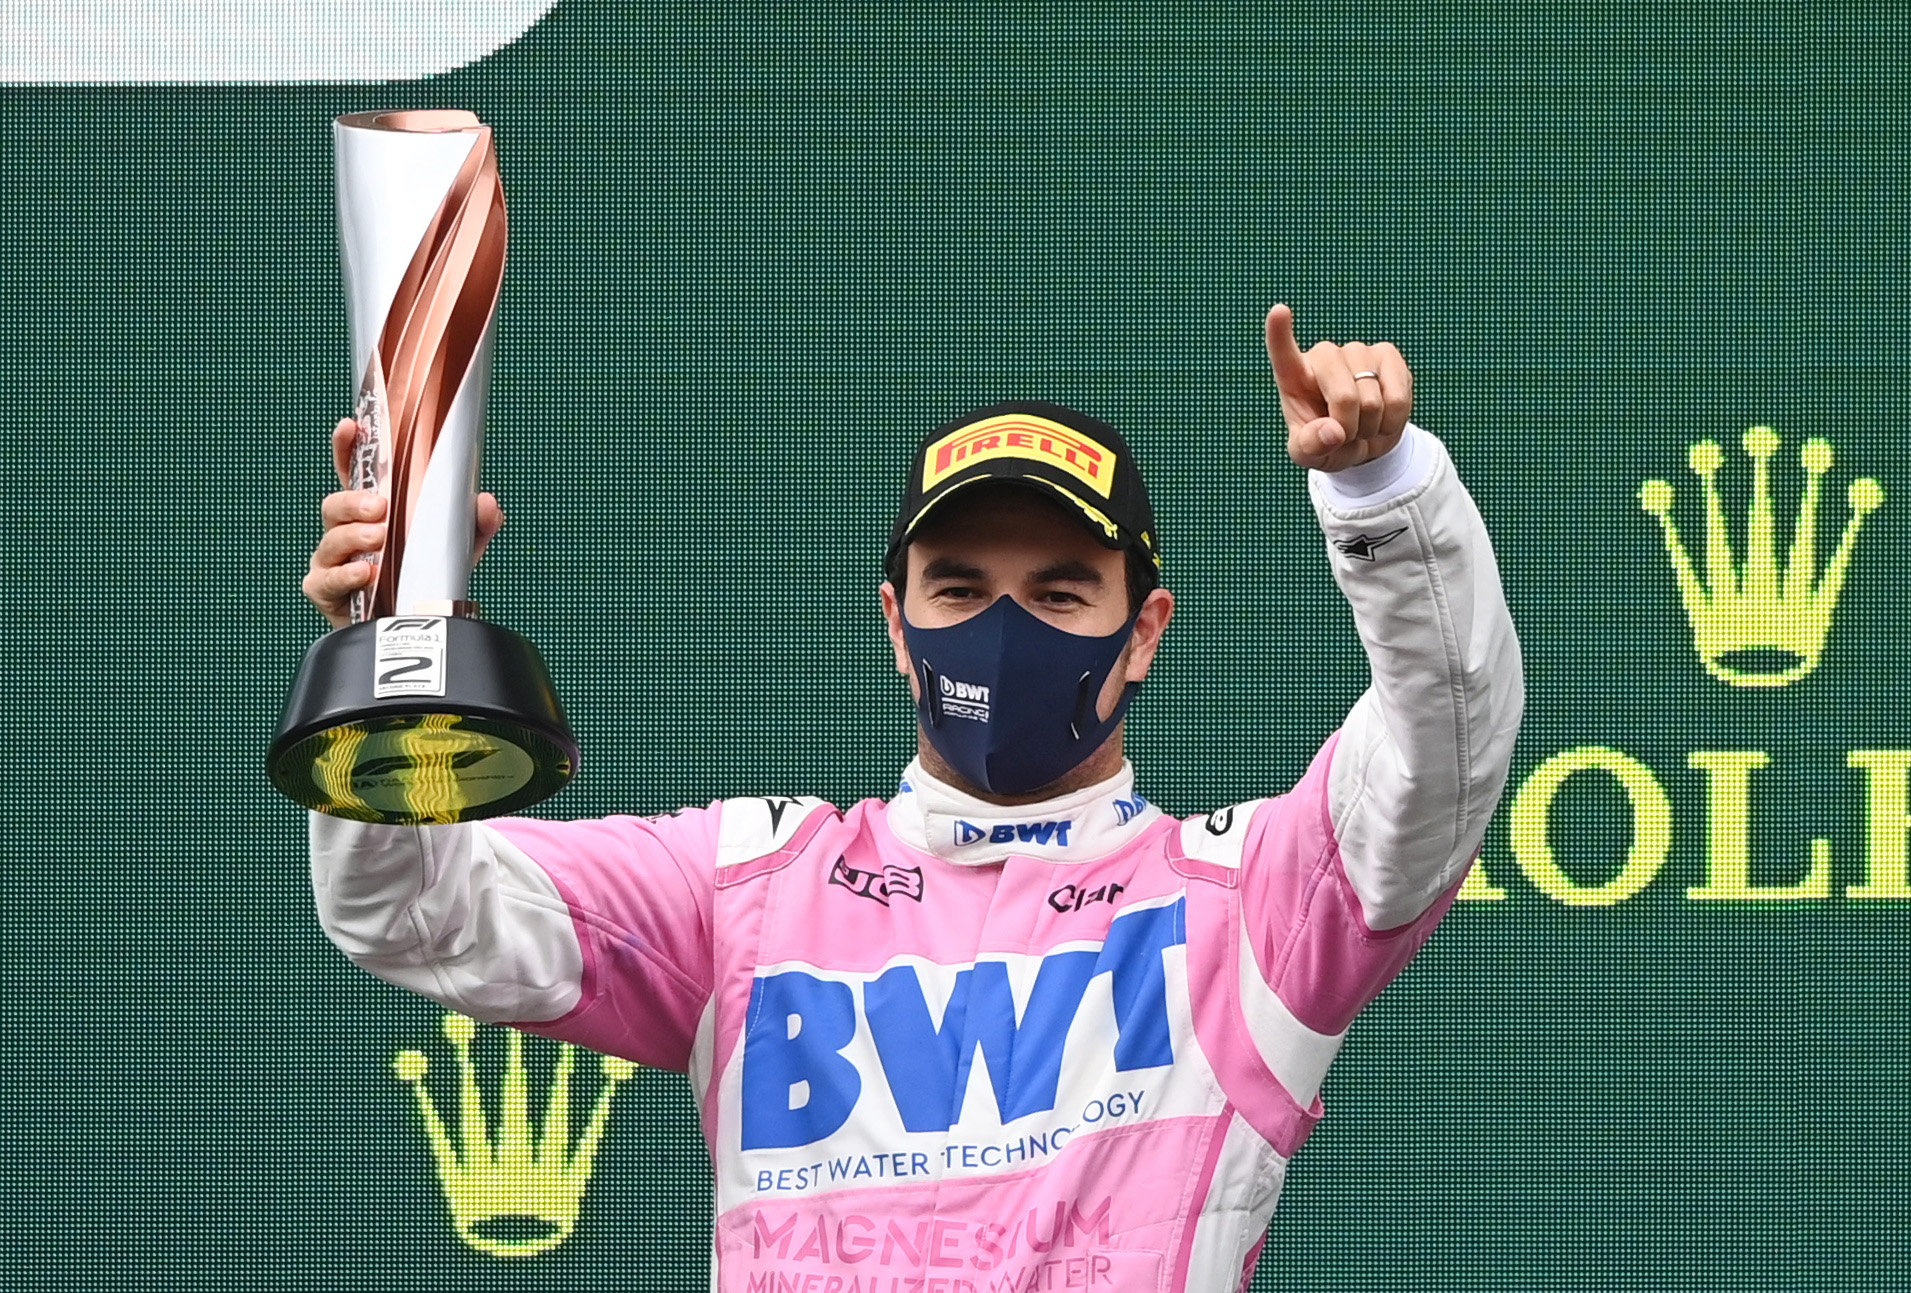 Sergio Pérez sumó su noveno podio en su carrera en la Fórmula Uno (Foto: REUTERS/Ozan Kose)